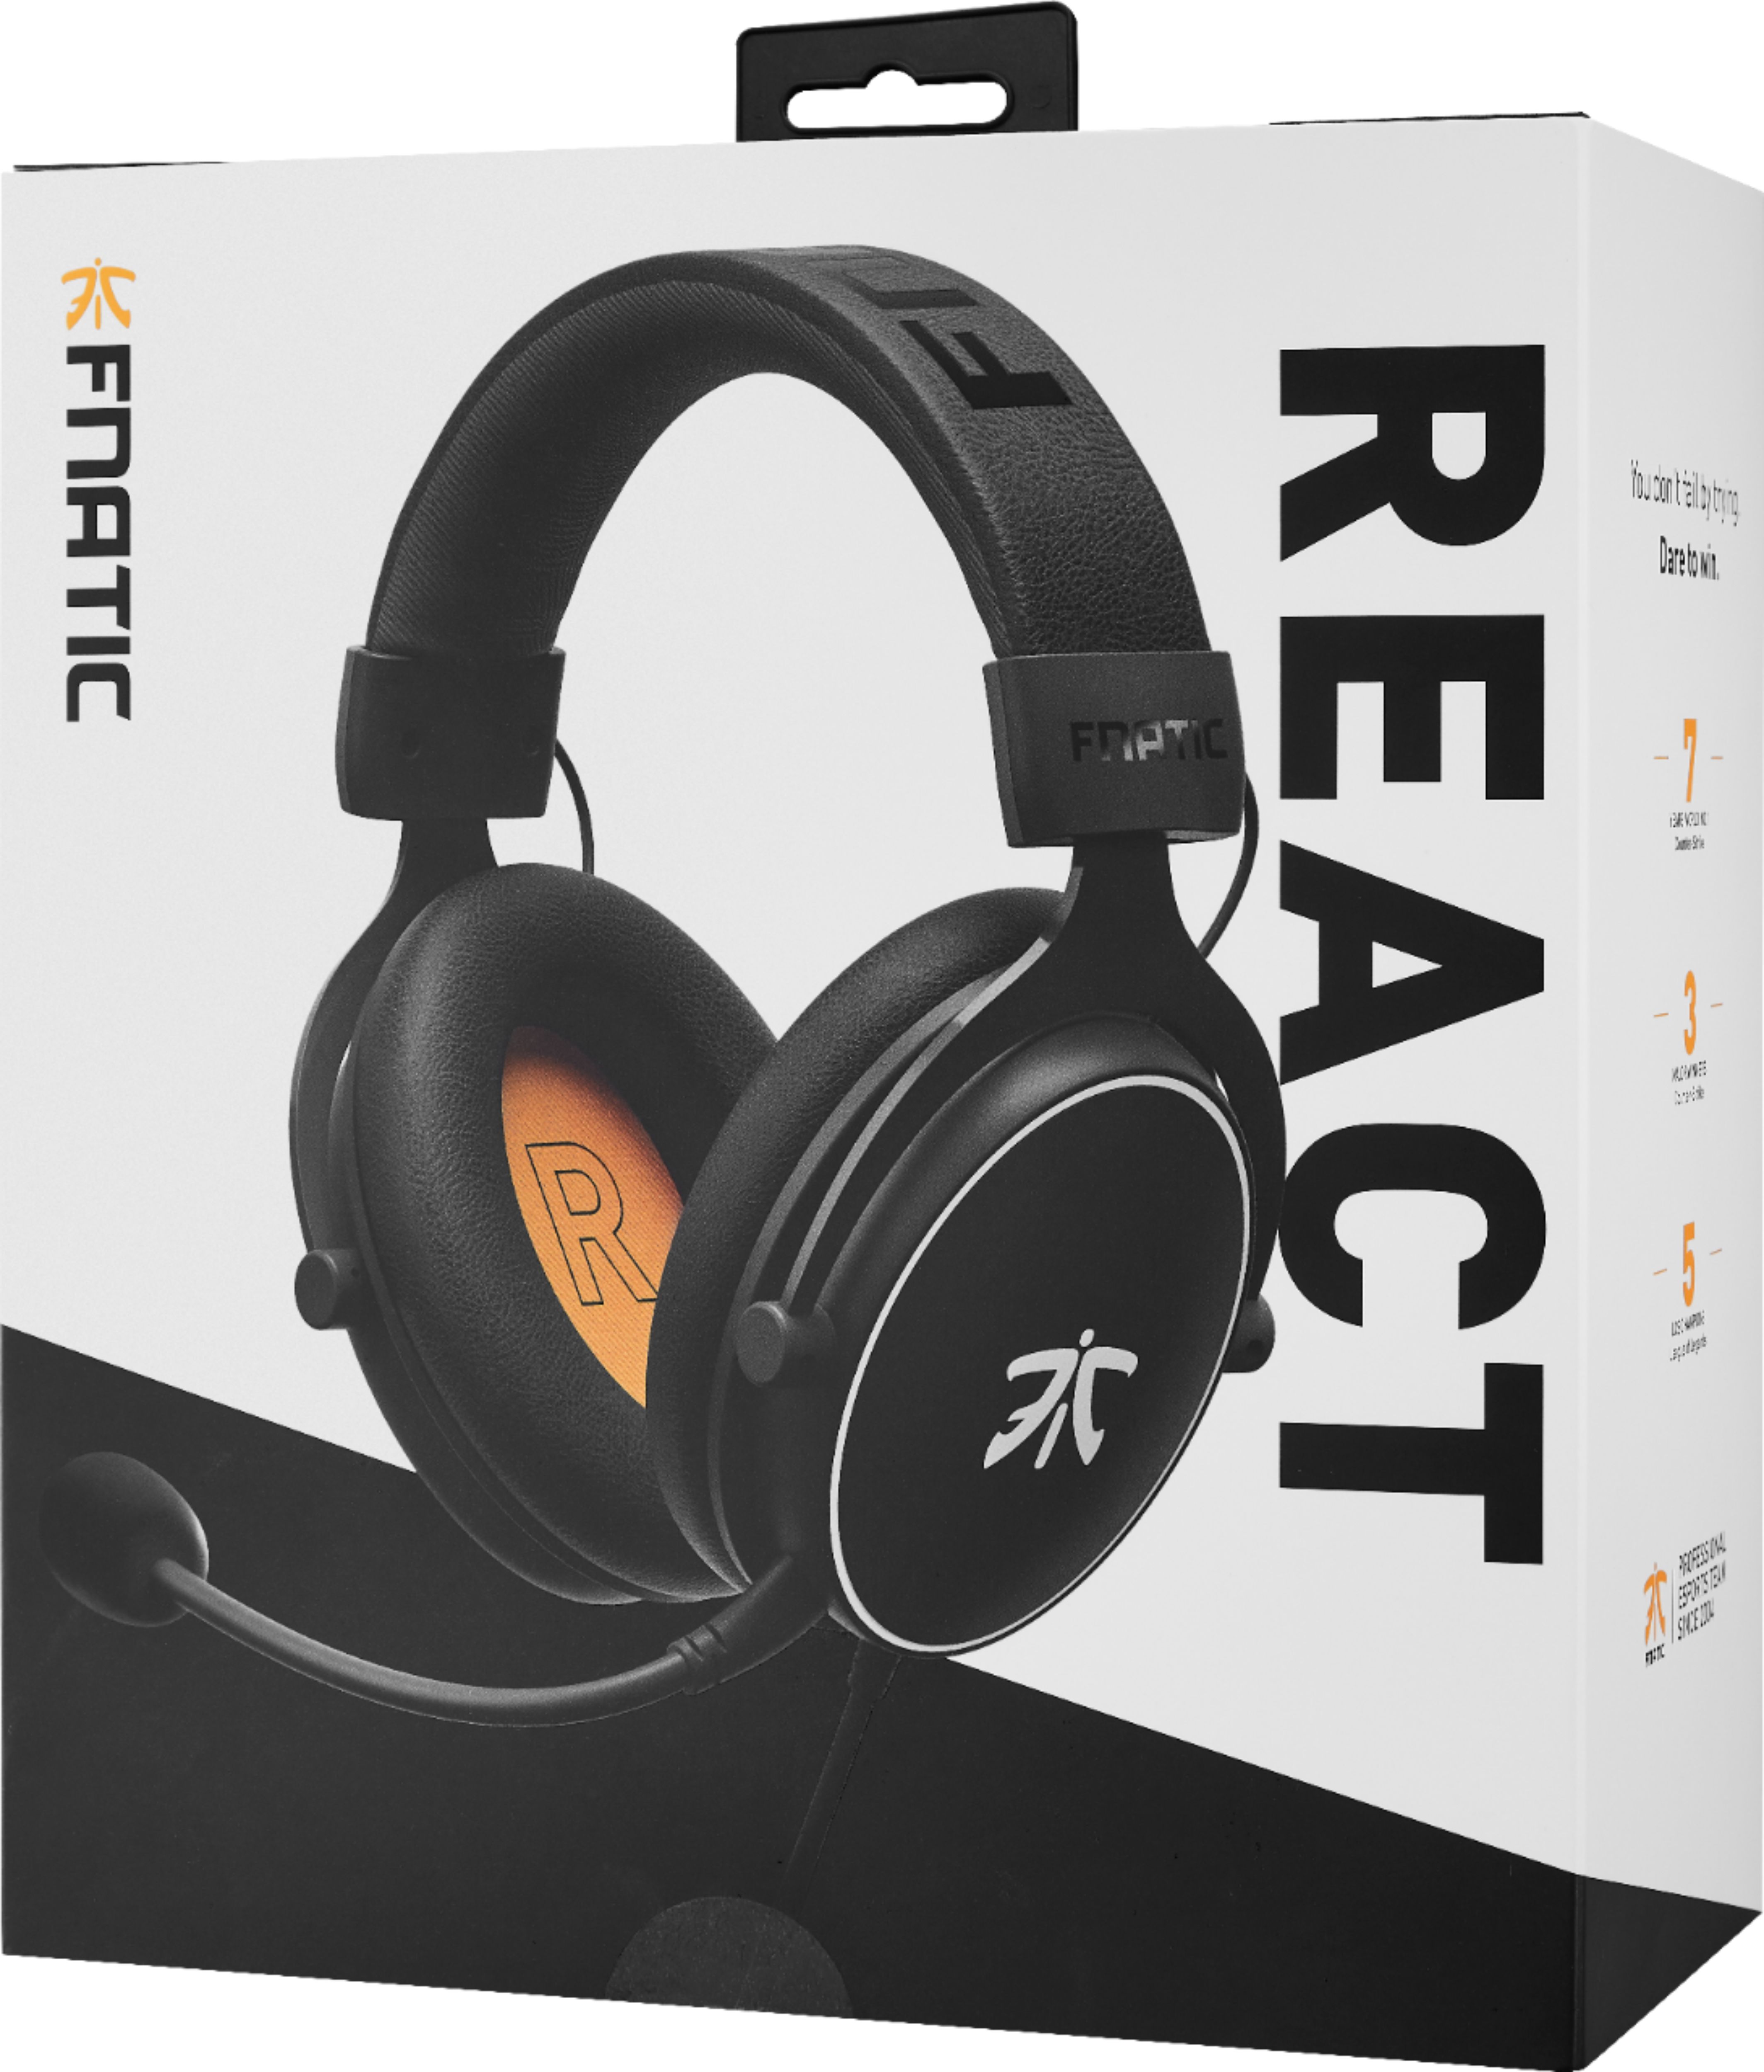 fnatic react headset amazon